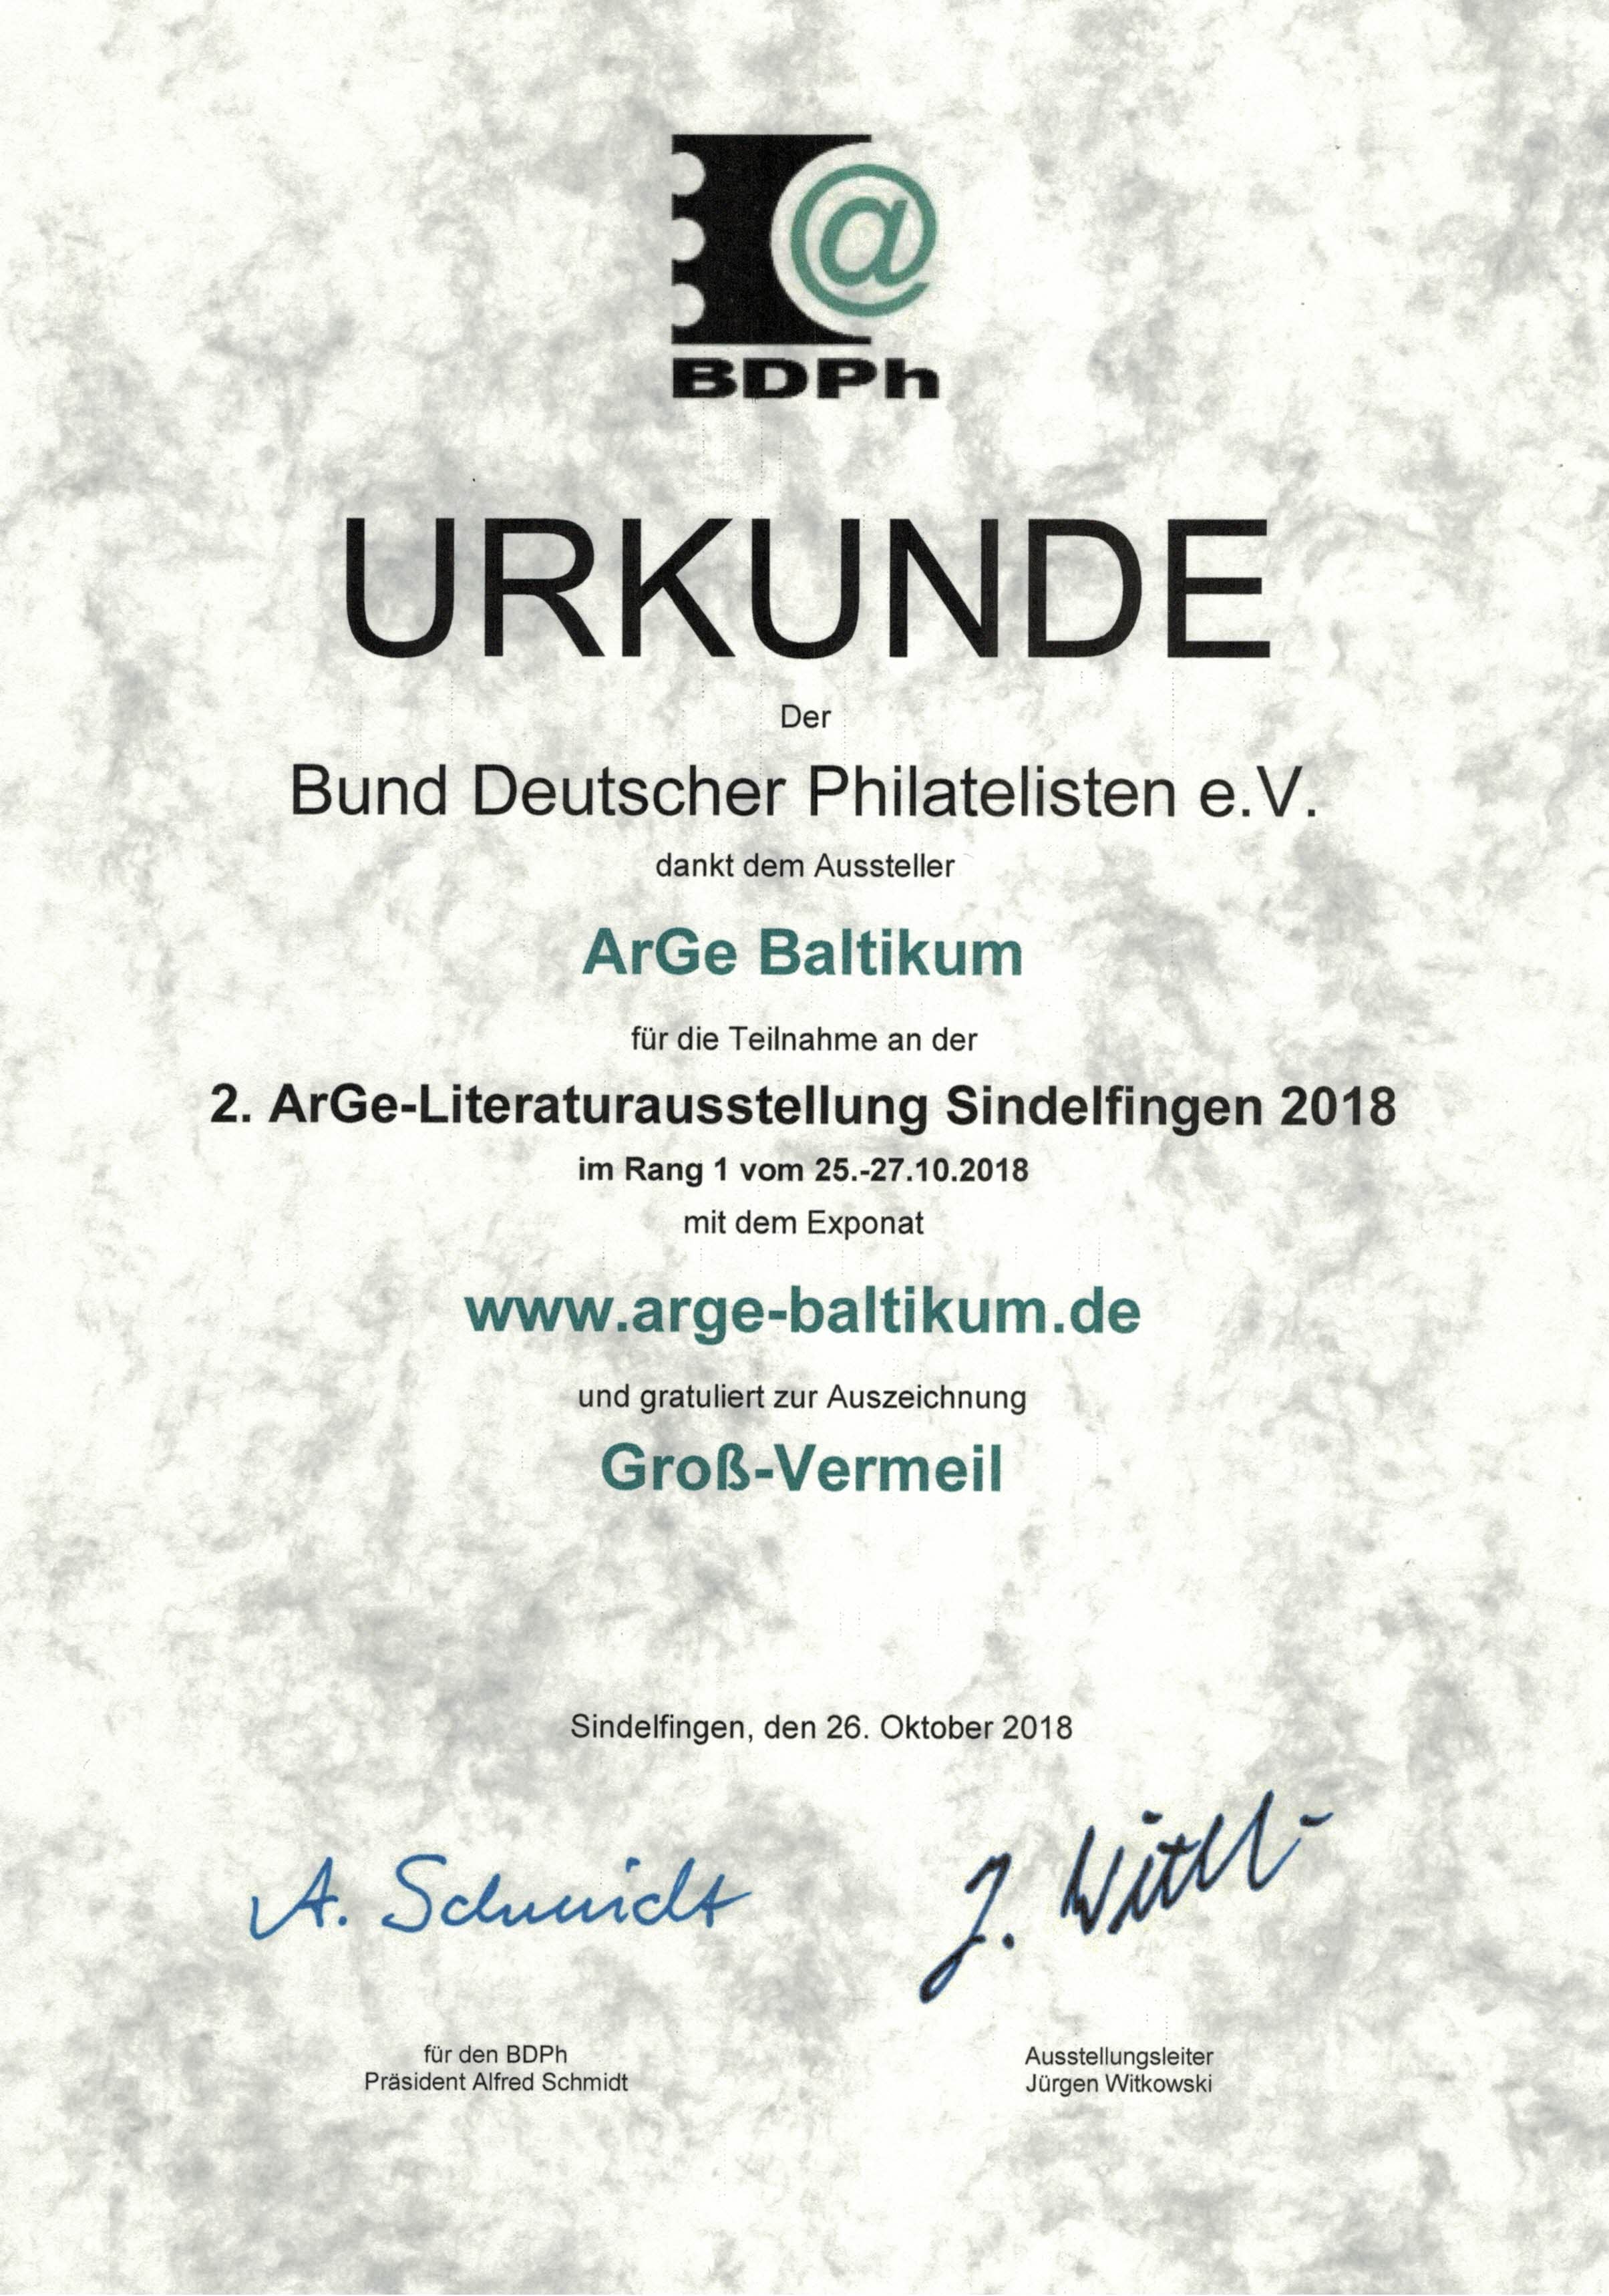 Large Vermeil for the website www.arge-baltikum.de at the 2nd ArGe literature exhibition Sindelfingen 2018